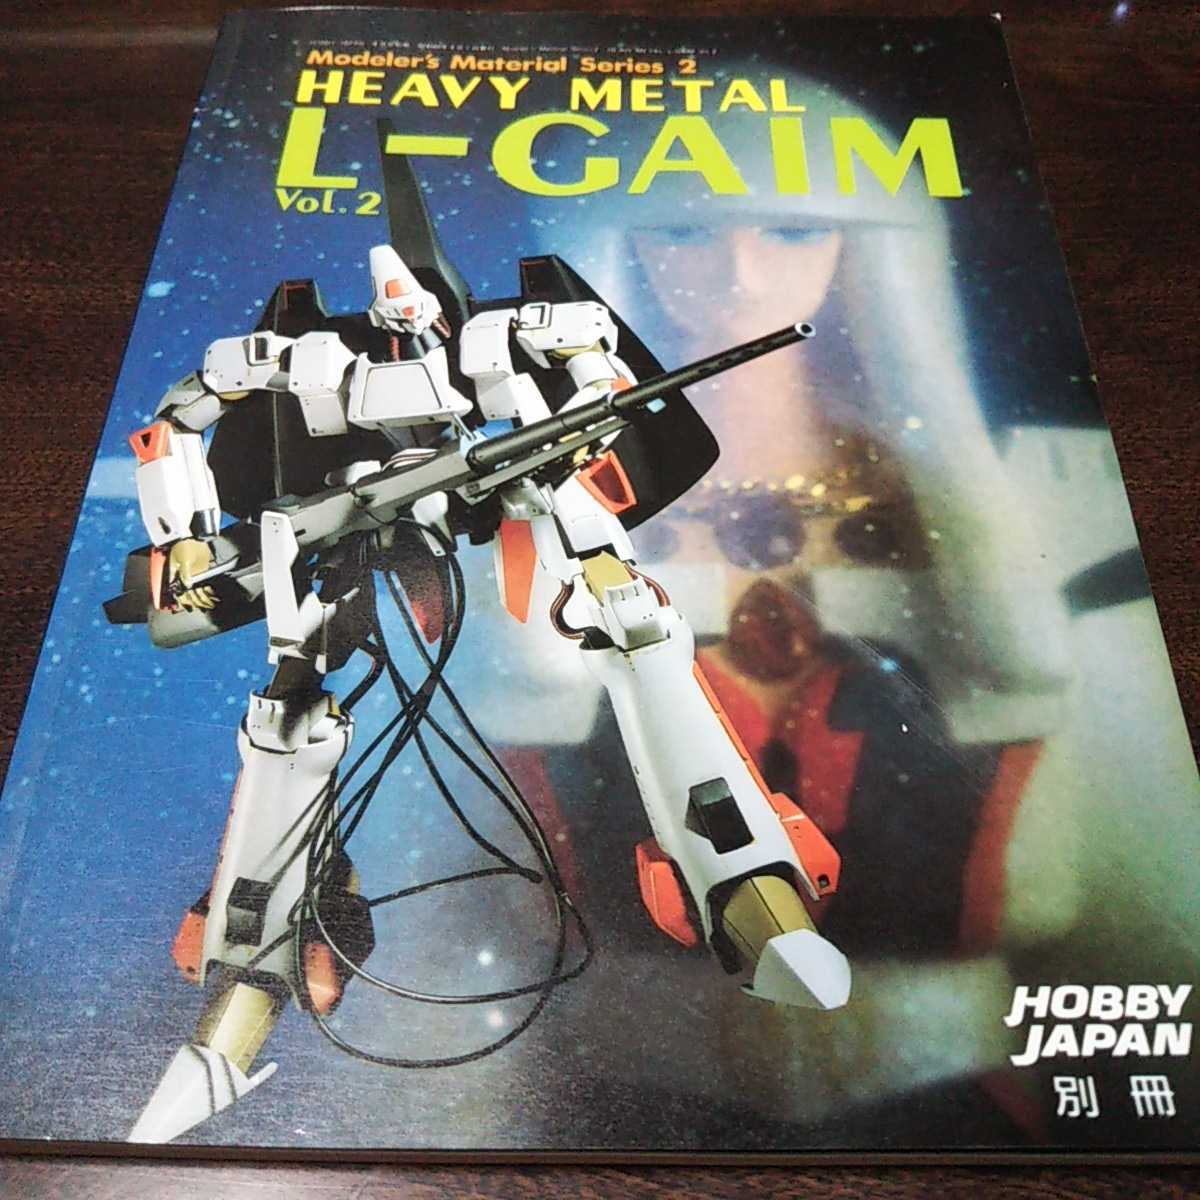  хобби Japan отдельный выпуск L gaimvol.2 1985 4 месяц номер отдельный выпуск 